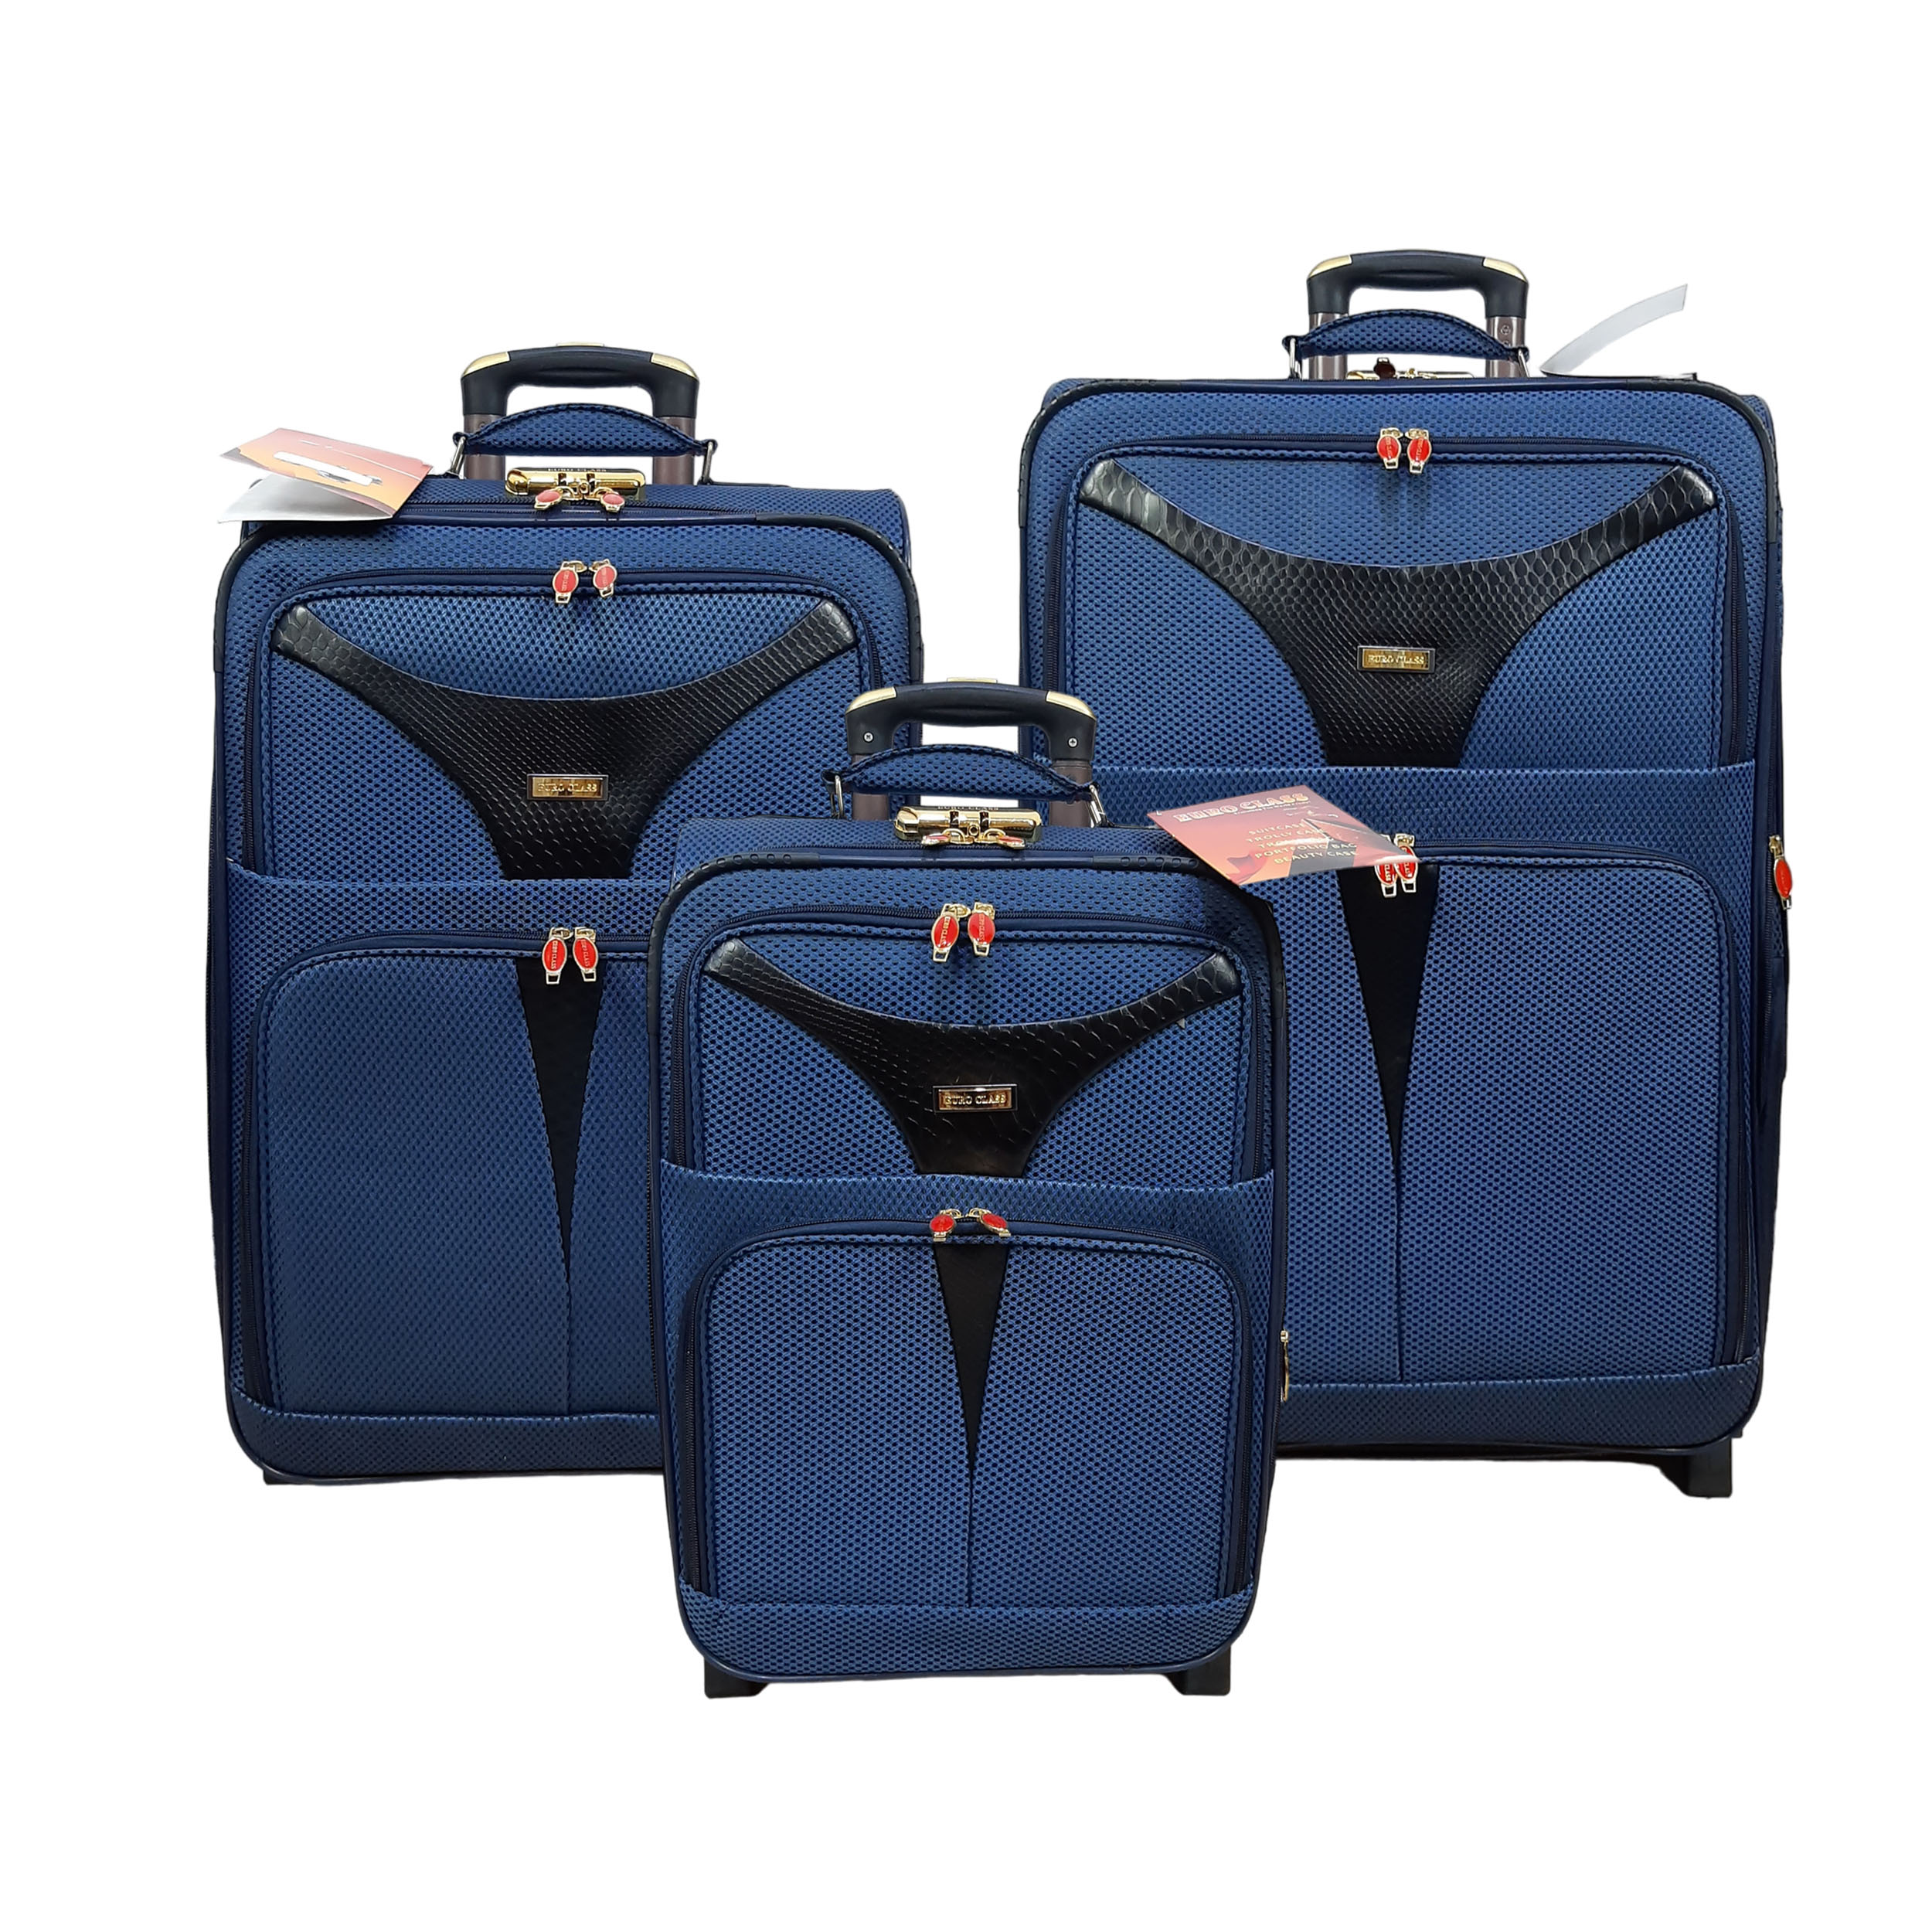 نکته خرید - قیمت روز مجموعه سه عددی چمدان یورو کلاس مدل J9050 خرید